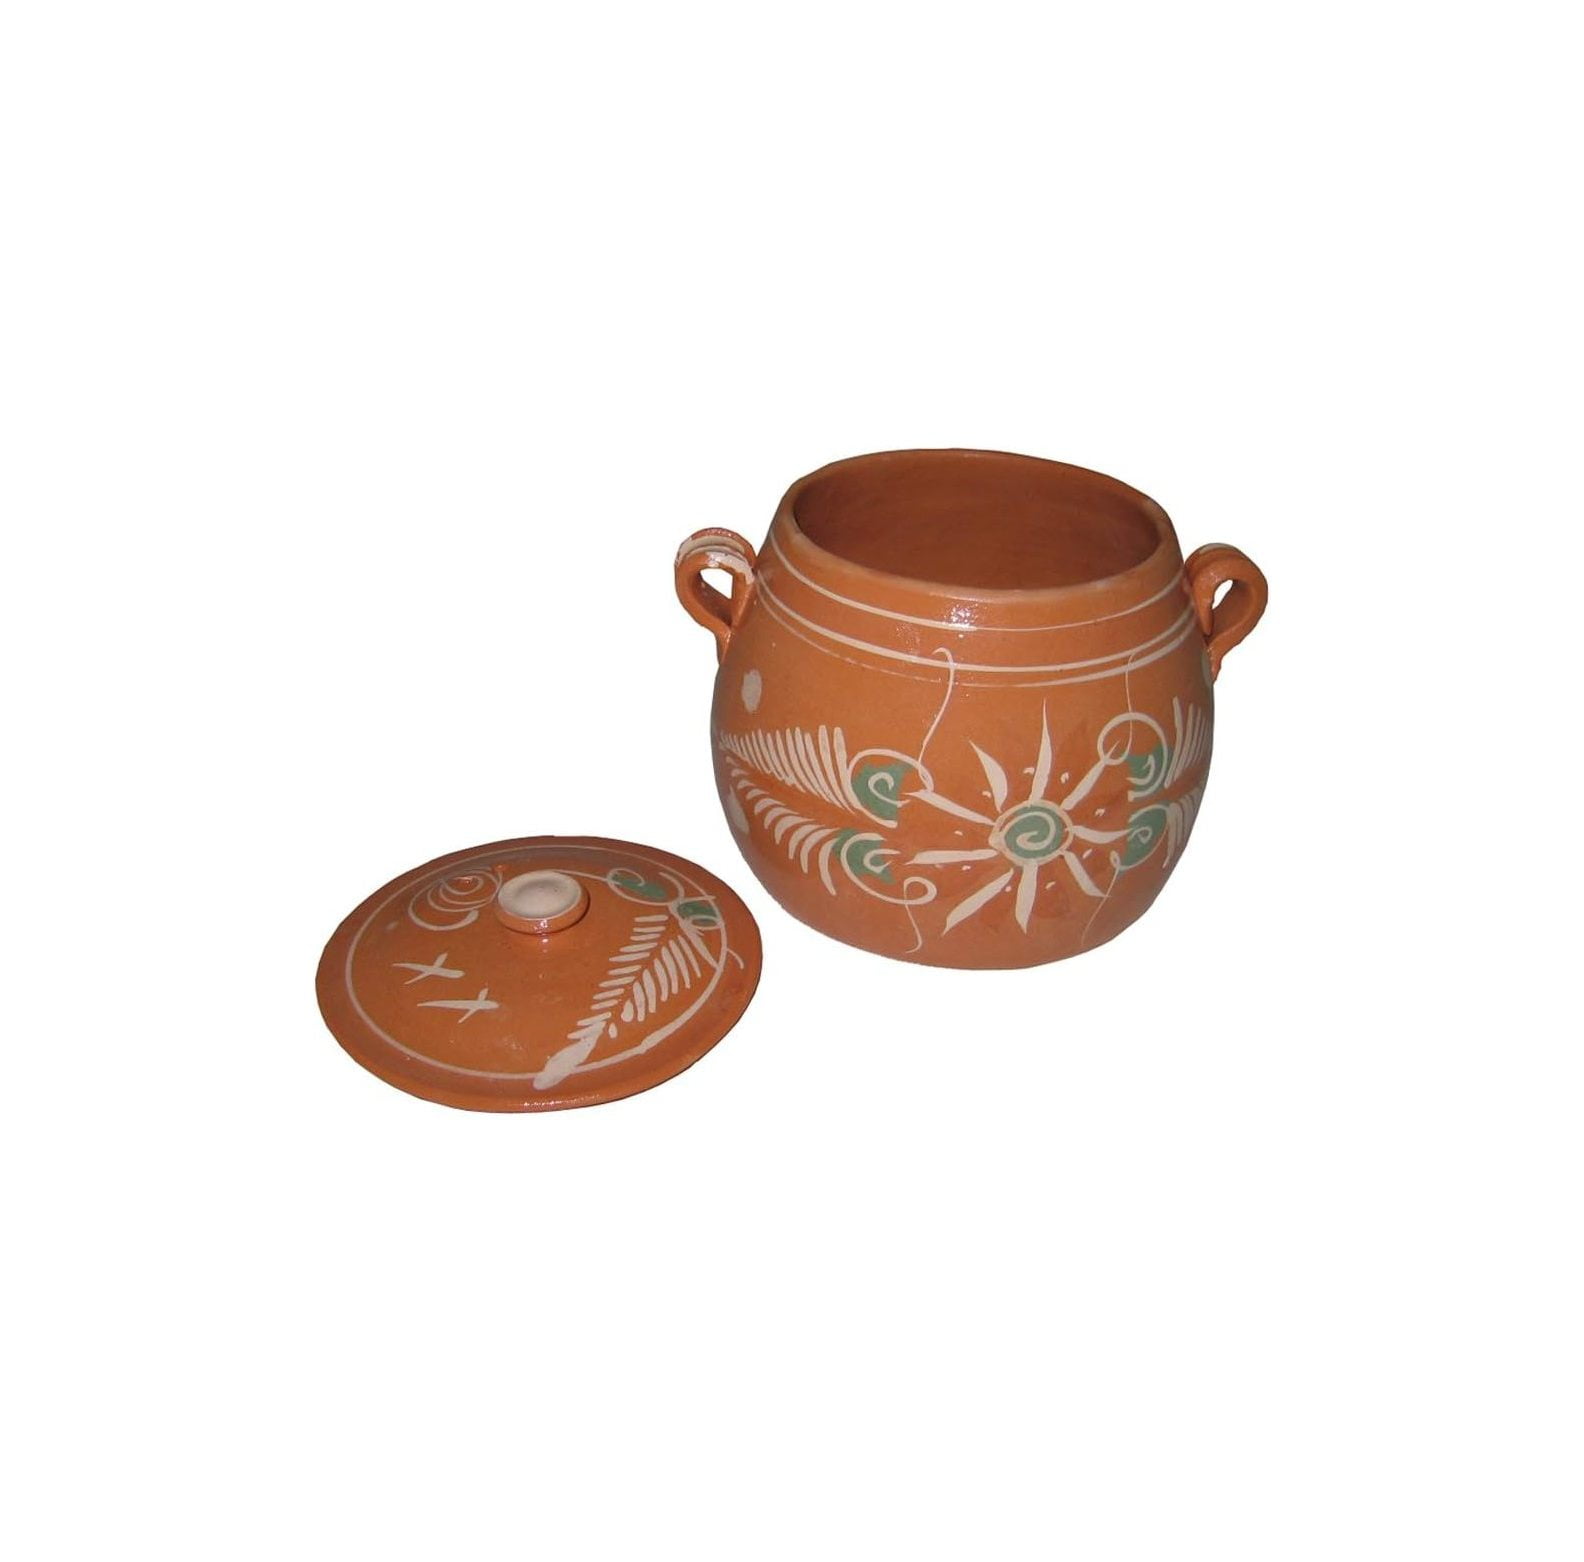 Olla de Barro Frijolera sin Plomo / Lead Free Clay Bean Pot with lid Small  - 3.5 Qt3.5 Qt